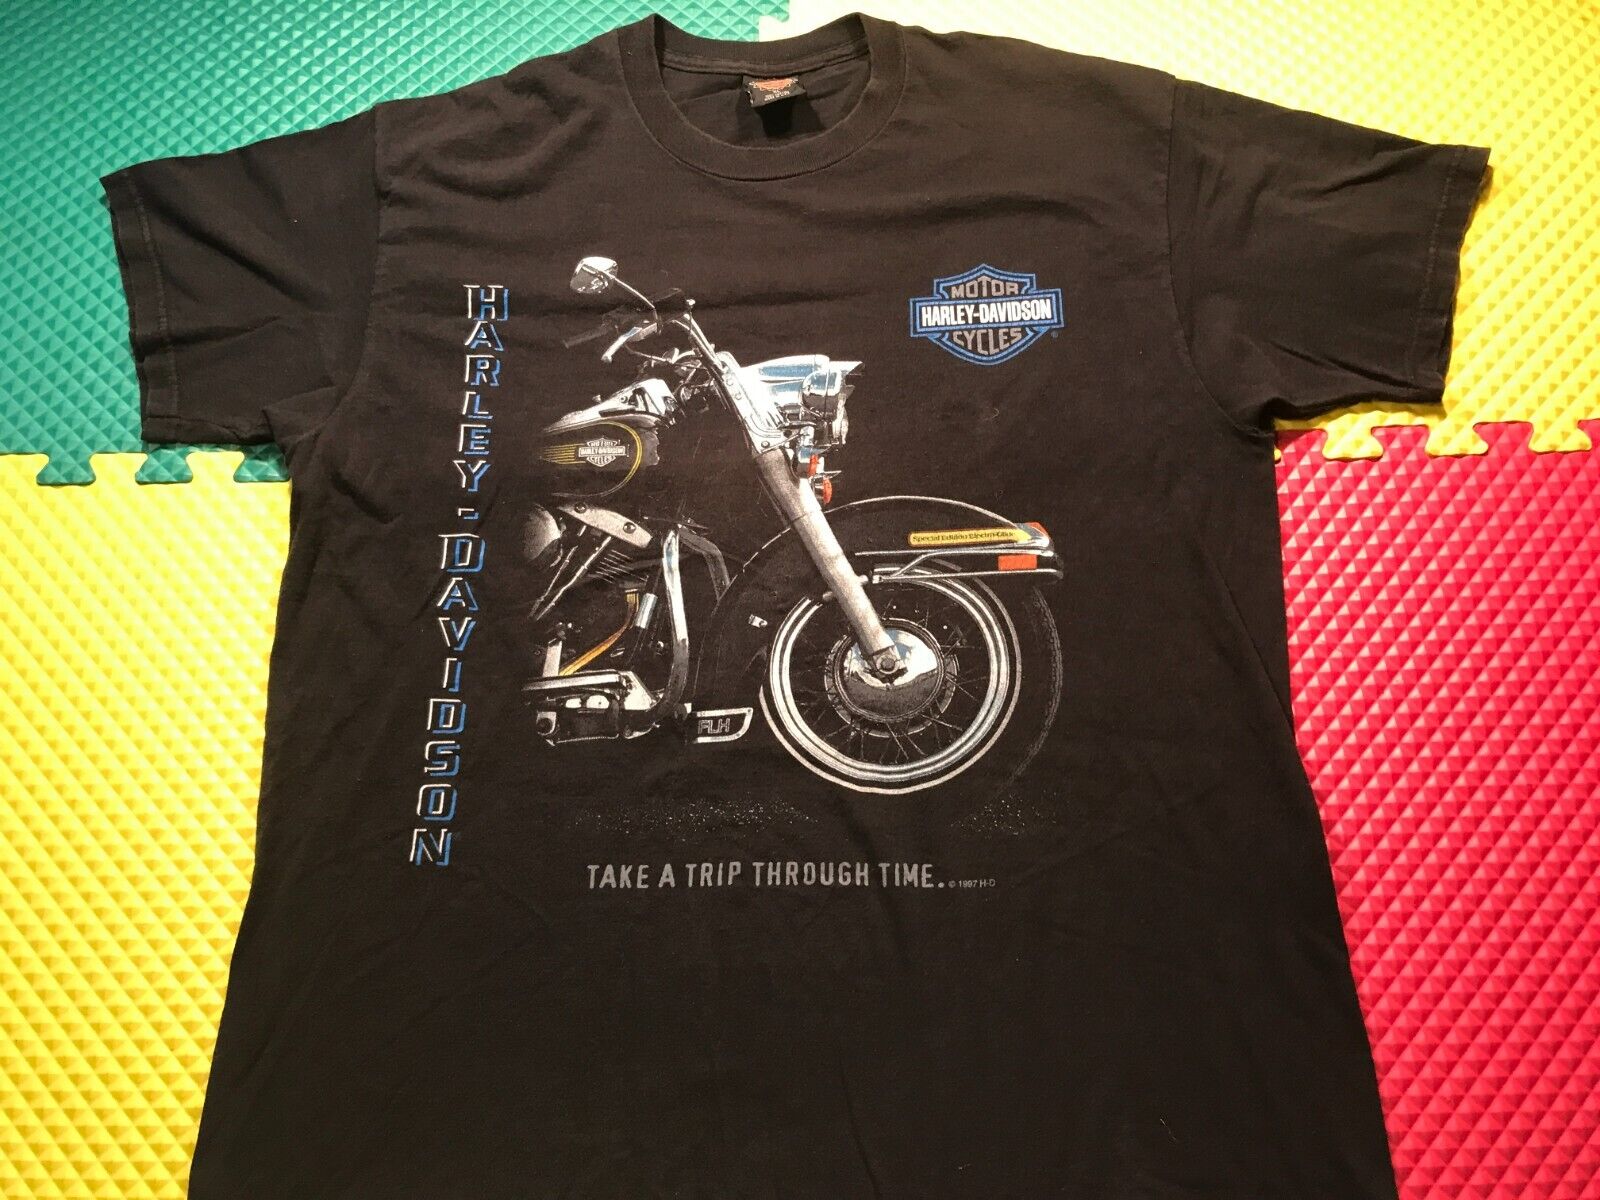 1997 Harley Davidson Take A Trip Through Time Shirt Men Size XL Made in USA Nice